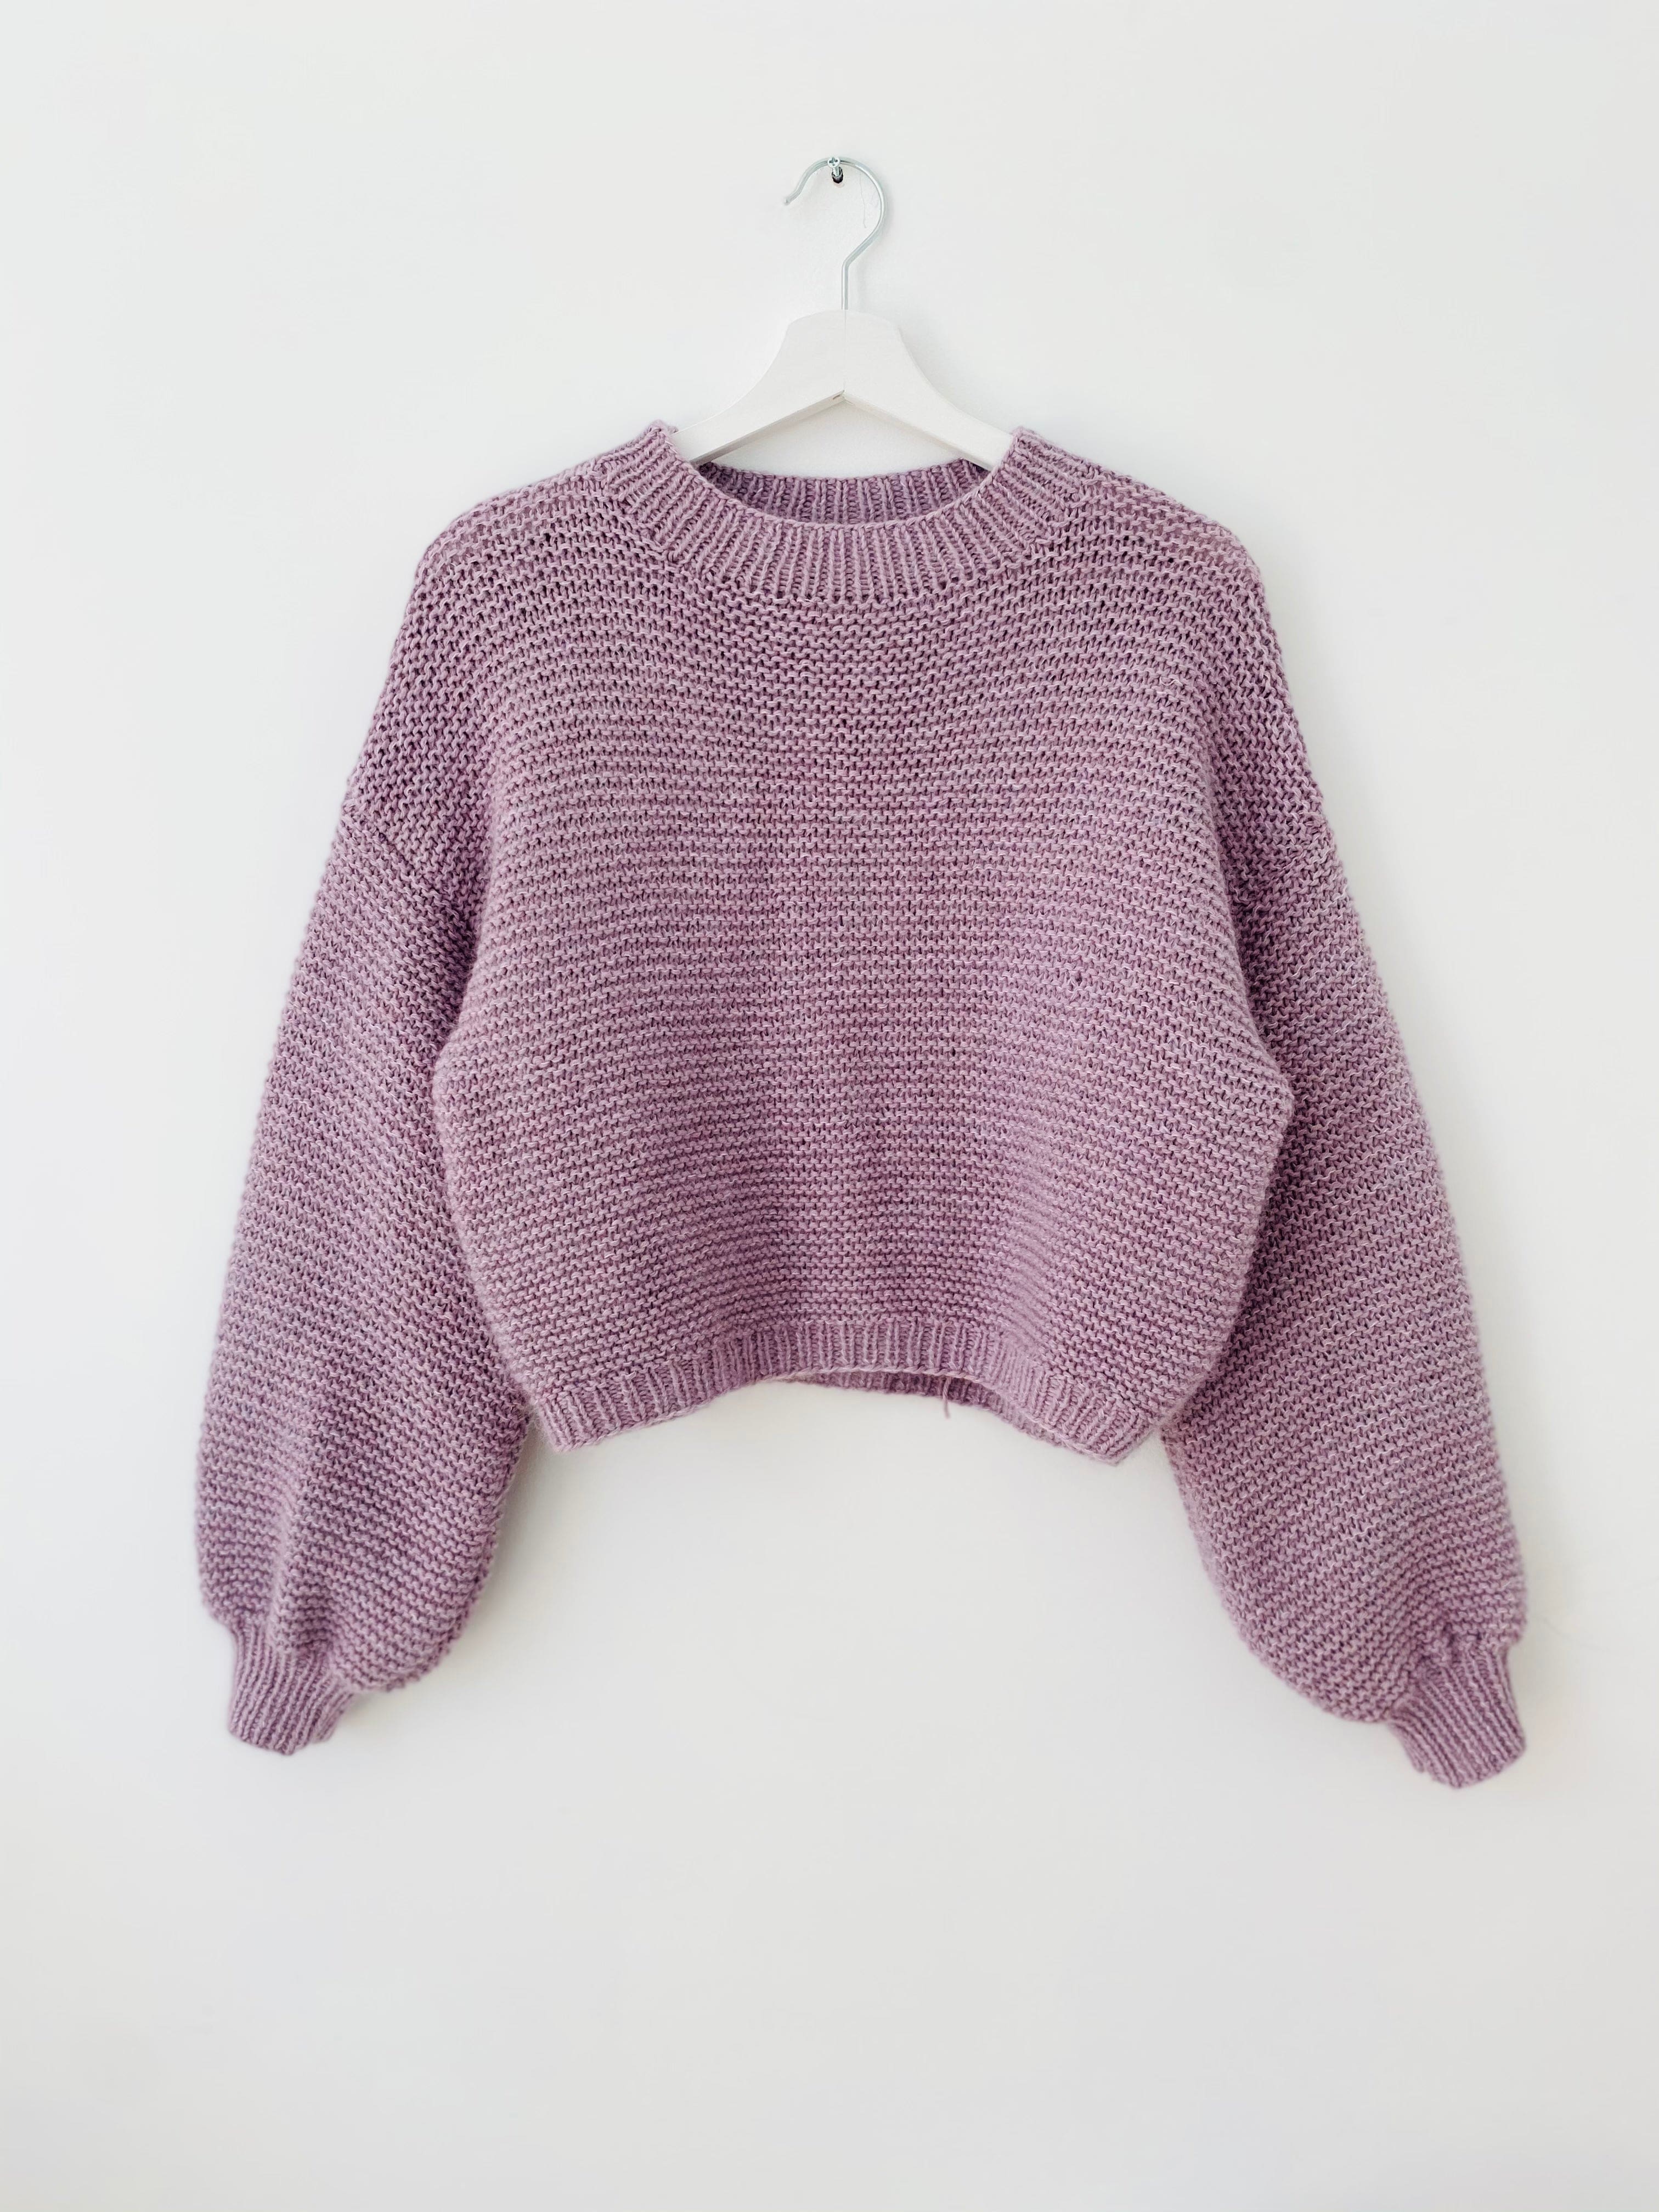 Claude Oversize-Sweater - Design kolibri.by_johanna - Strickset von KOLIBRI_BY_JOHANNA jetzt online kaufen bei OONIQUE